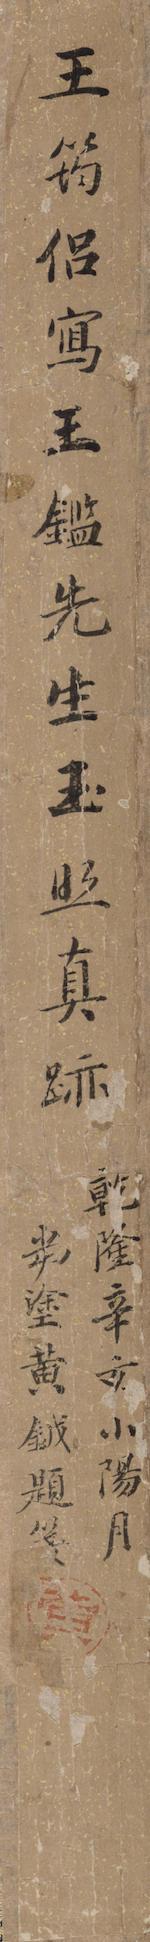 Portrait of Wang Jian (1598-1677) by 
																			 Wang Chongjian